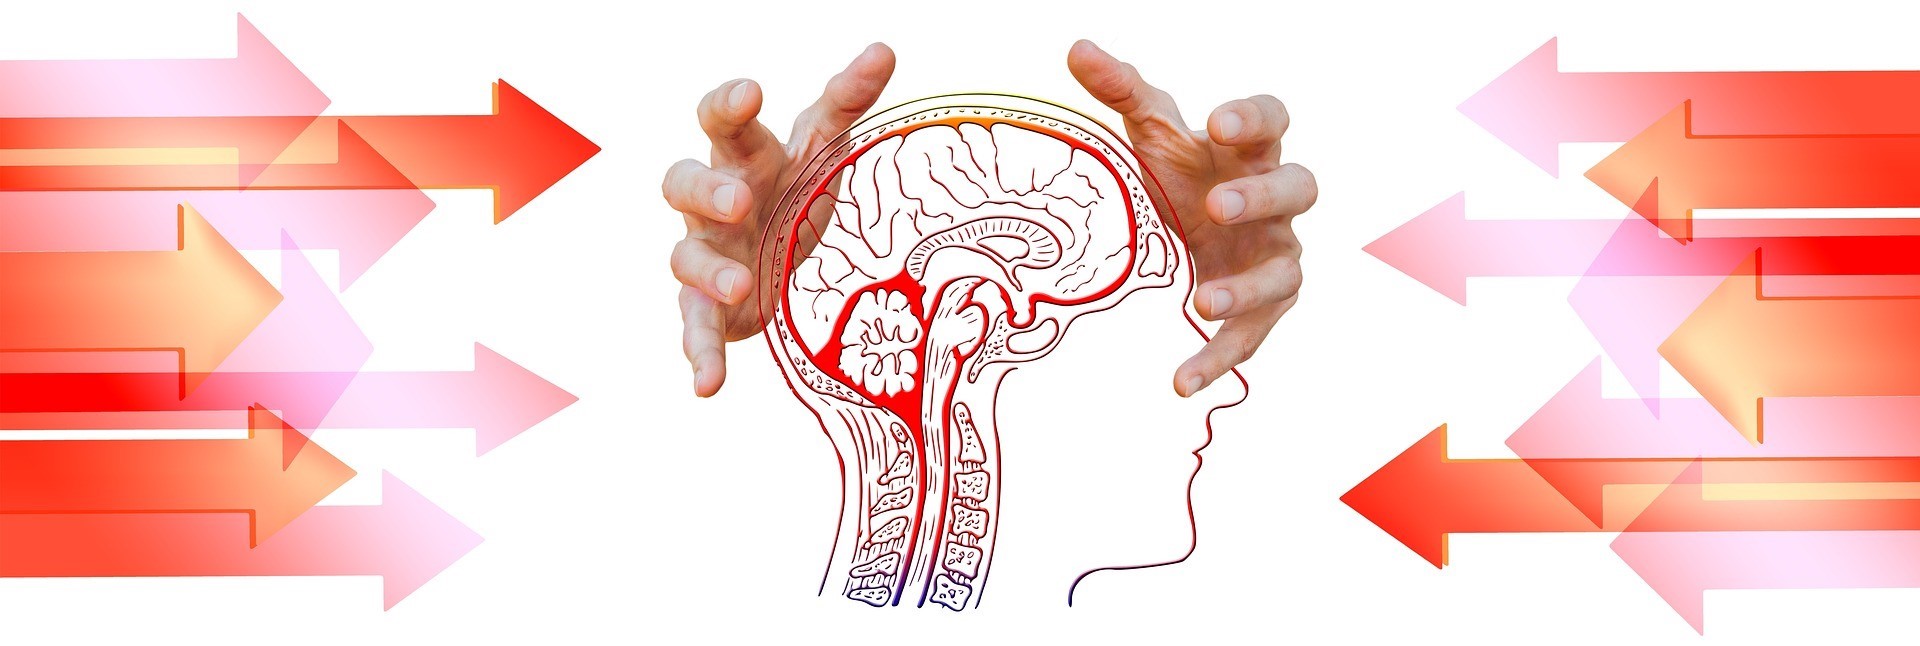 Billedet illustrerer stressterapi til en hjerne, som har mistet forbindelsen til sin personlige biologi, og hvordan det moderne stresser vores natur. 